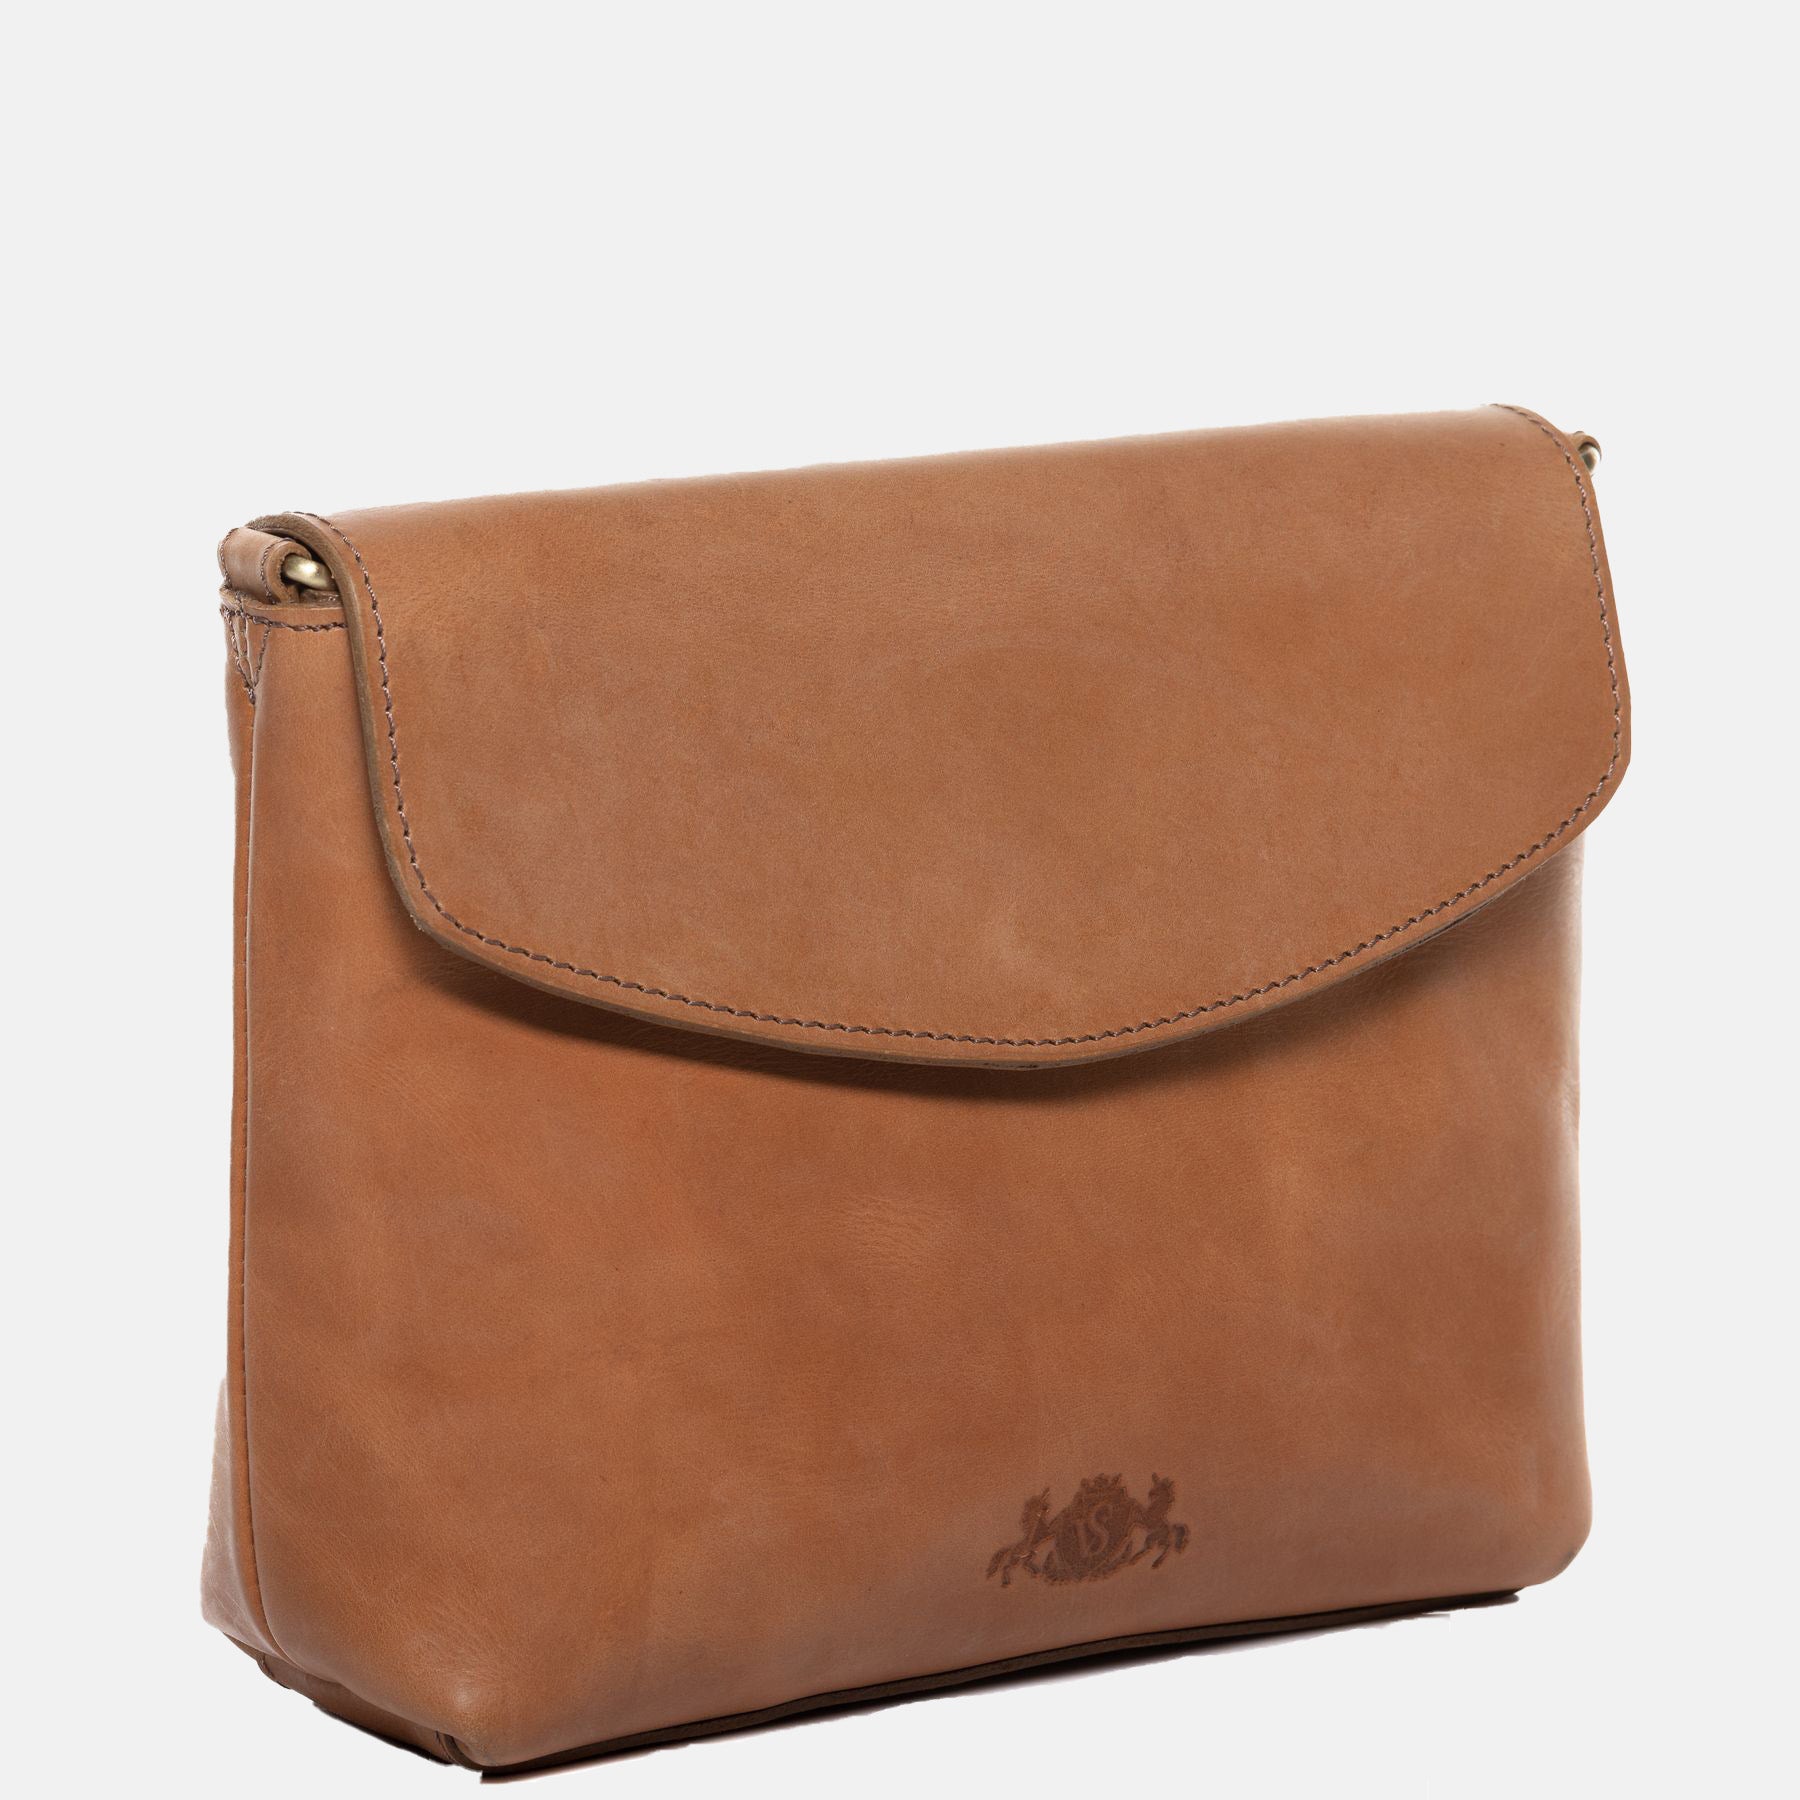 Shoulder bag ELYSA smooth leather brown